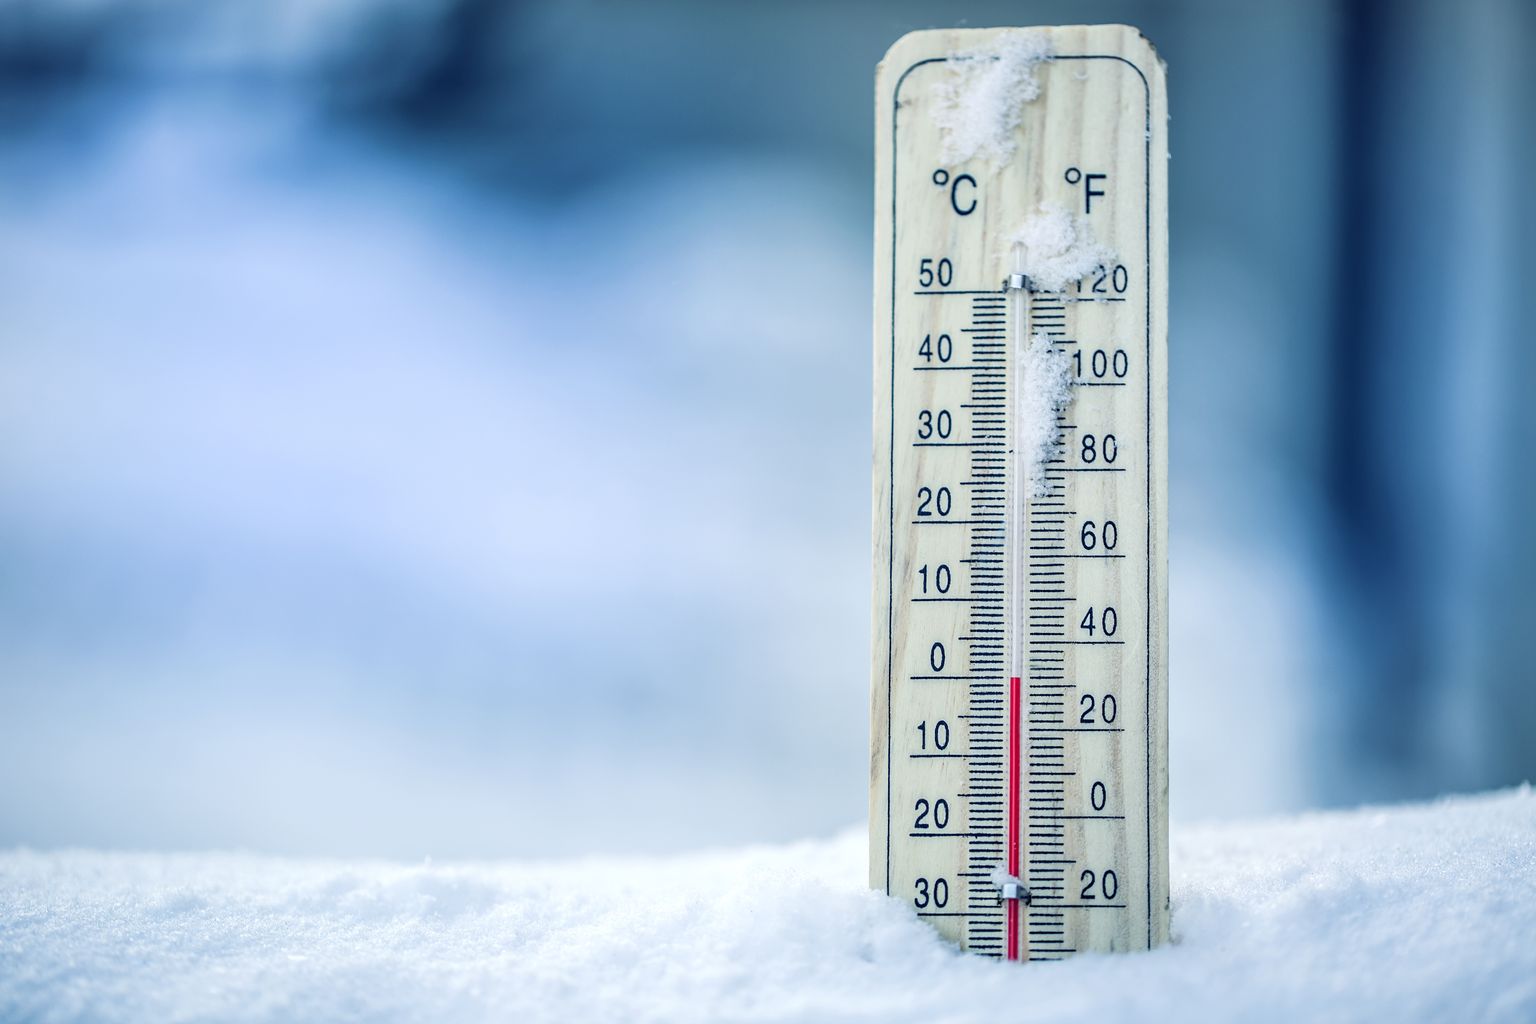 Le thermomètre sur la neige indique les basses températures en Celsius ou Farenheit.